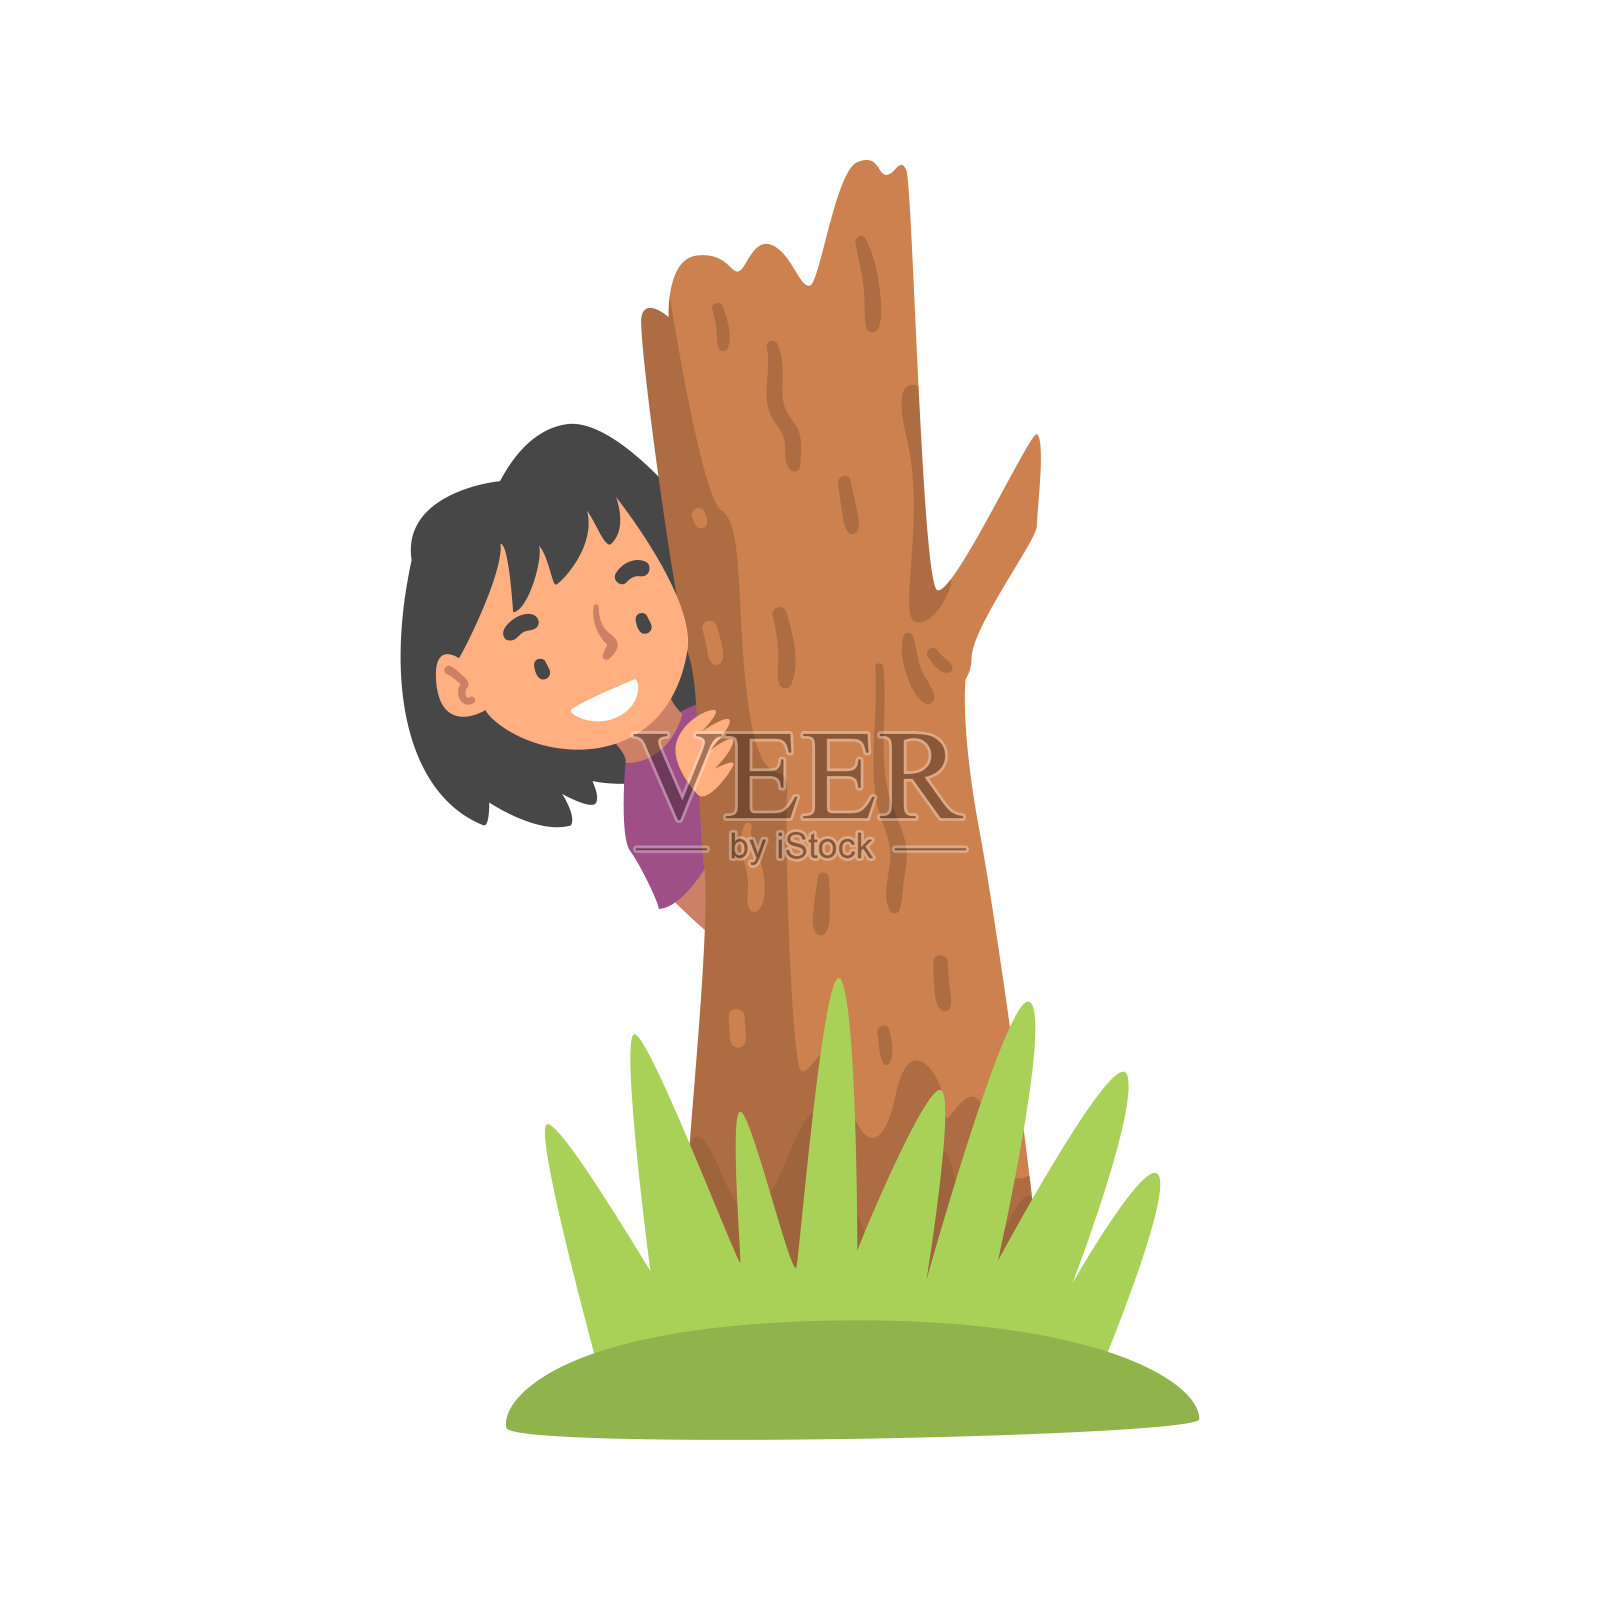 相当偷看从一棵树的后面小女孩在公园 库存图片. 图片 包括有 生活方式, 童年, 绿色, 人们, 人员, 颜色 - 69952437